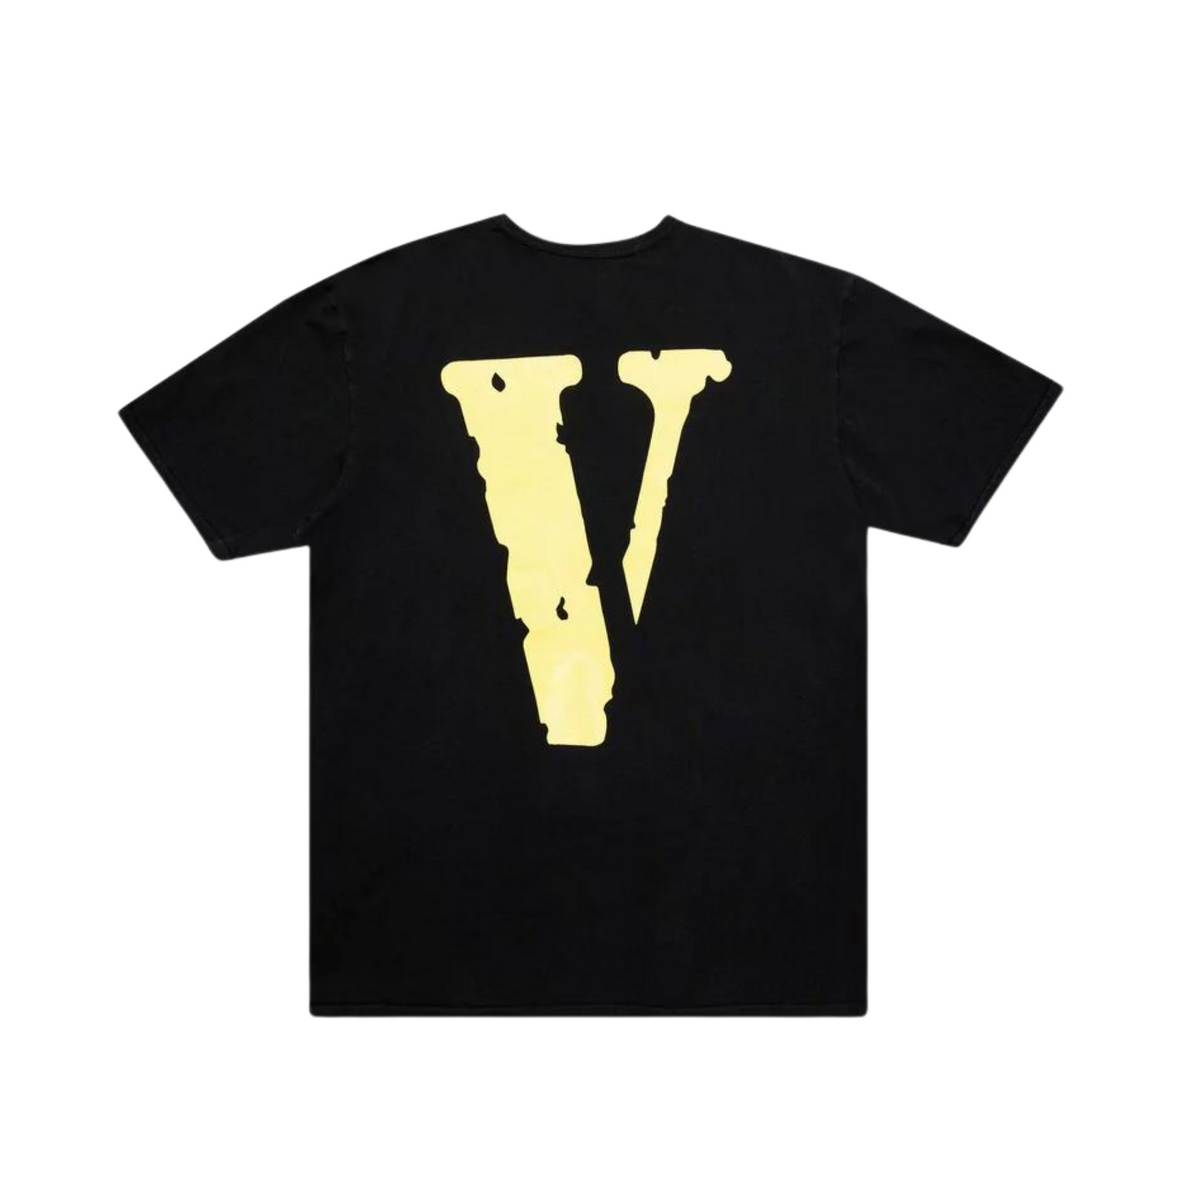 Vlone Staple T-shirt "Black/Yellow"